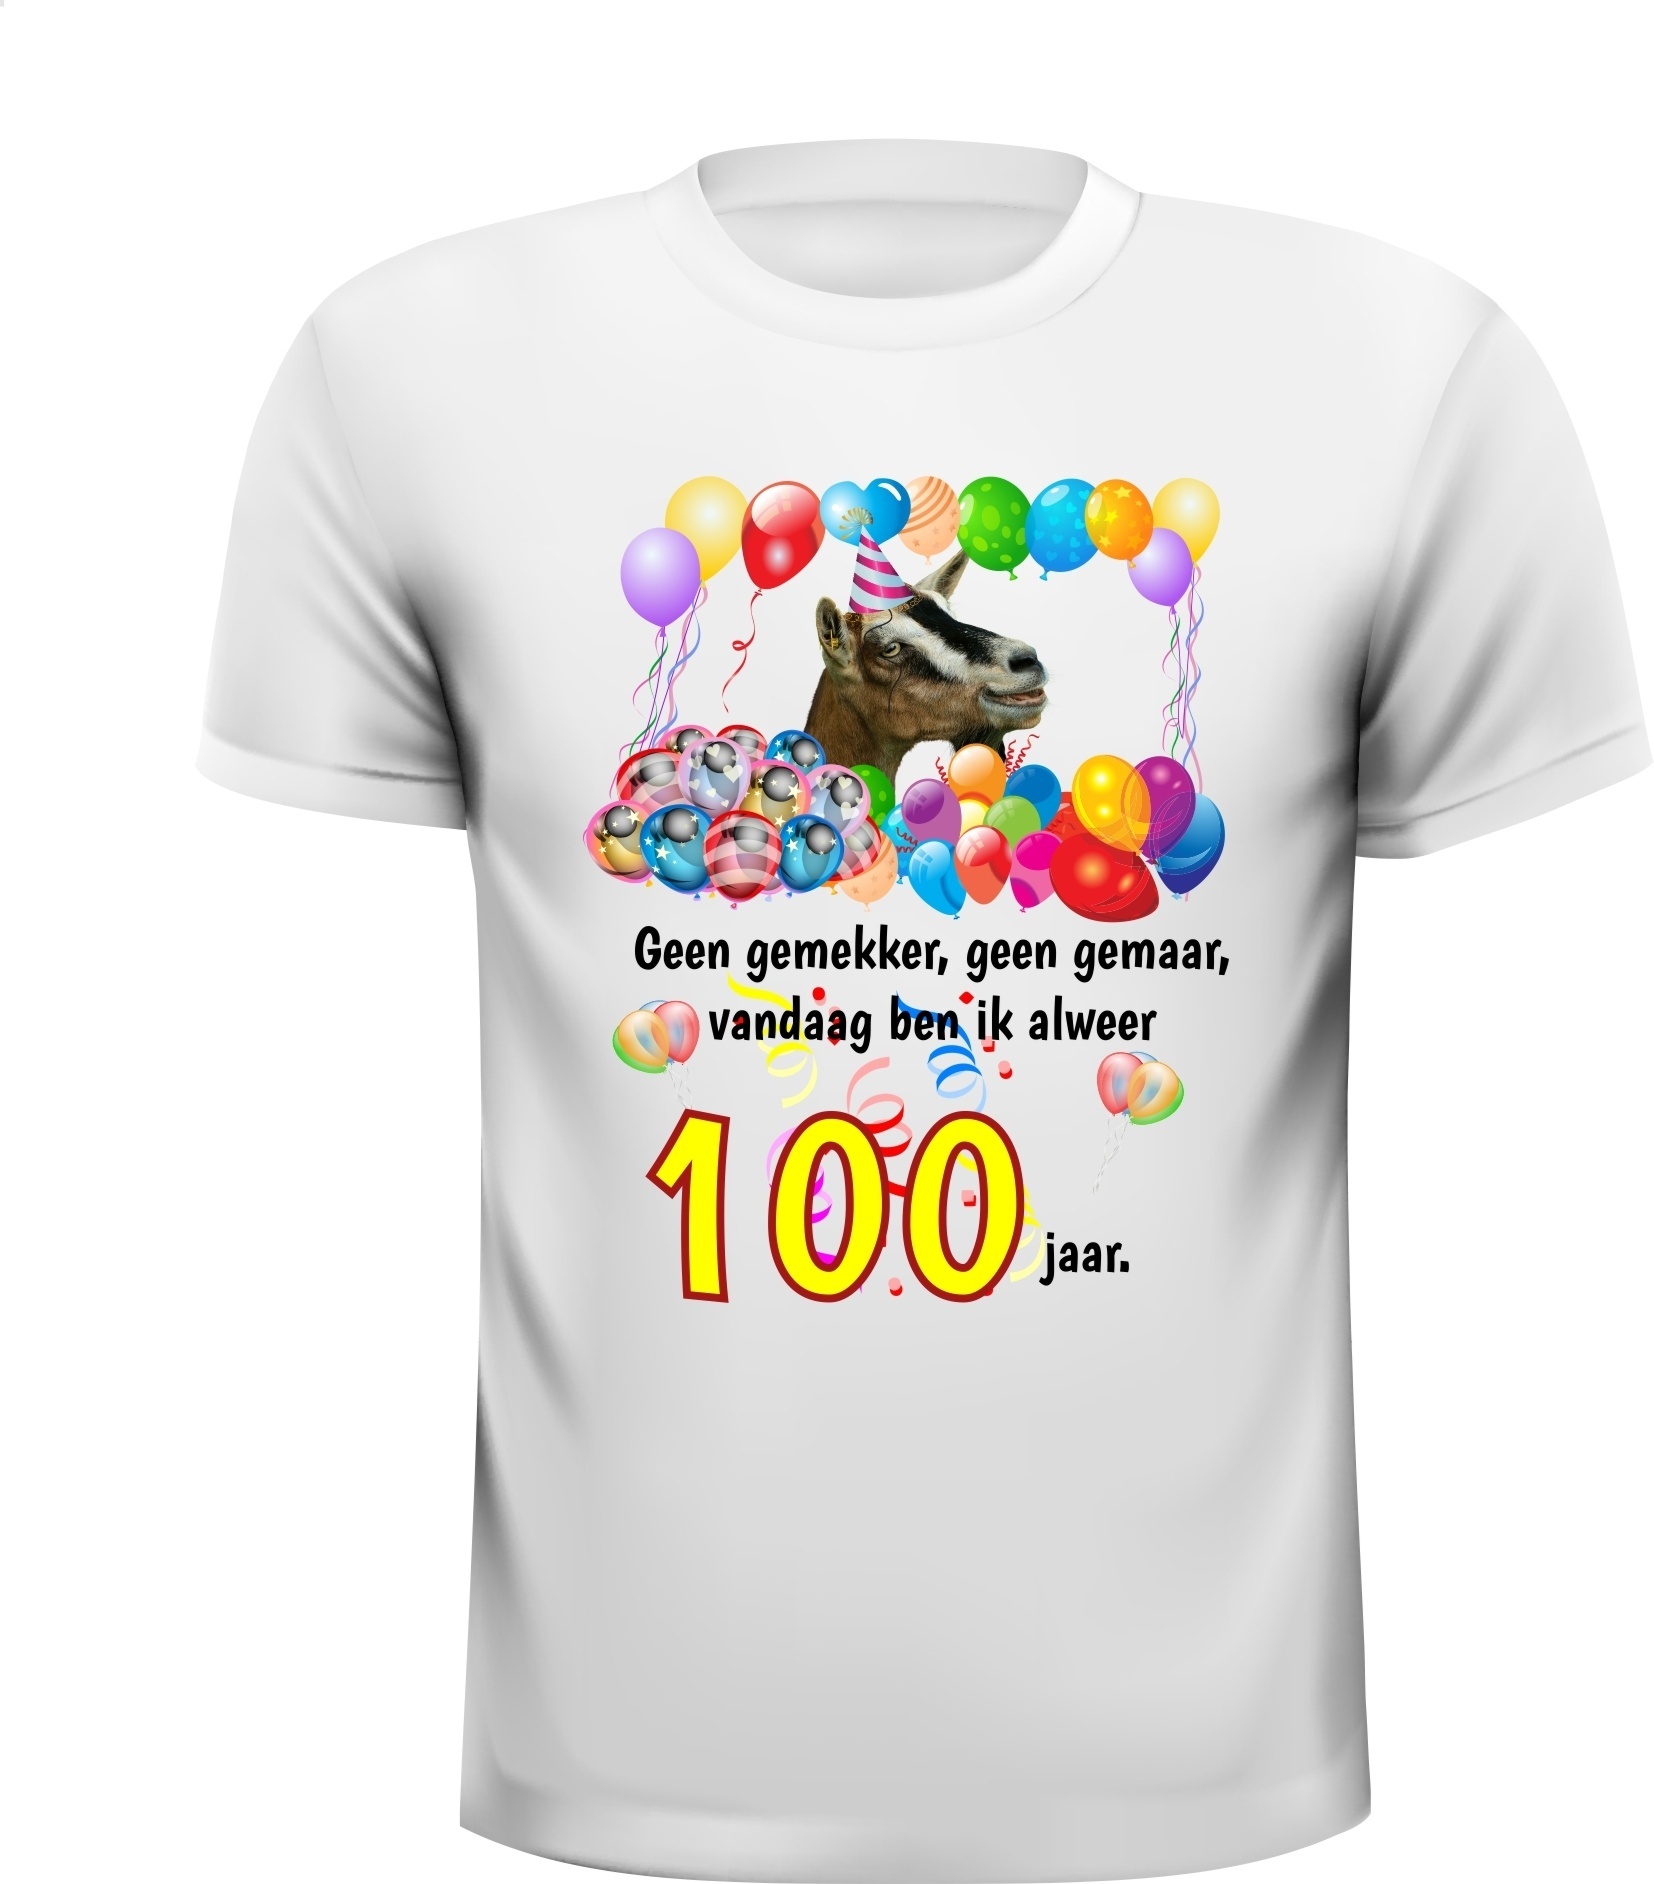 Verjaardag shirt met grappige tekst en mooie print voor een mijlpaal van honderd jaar